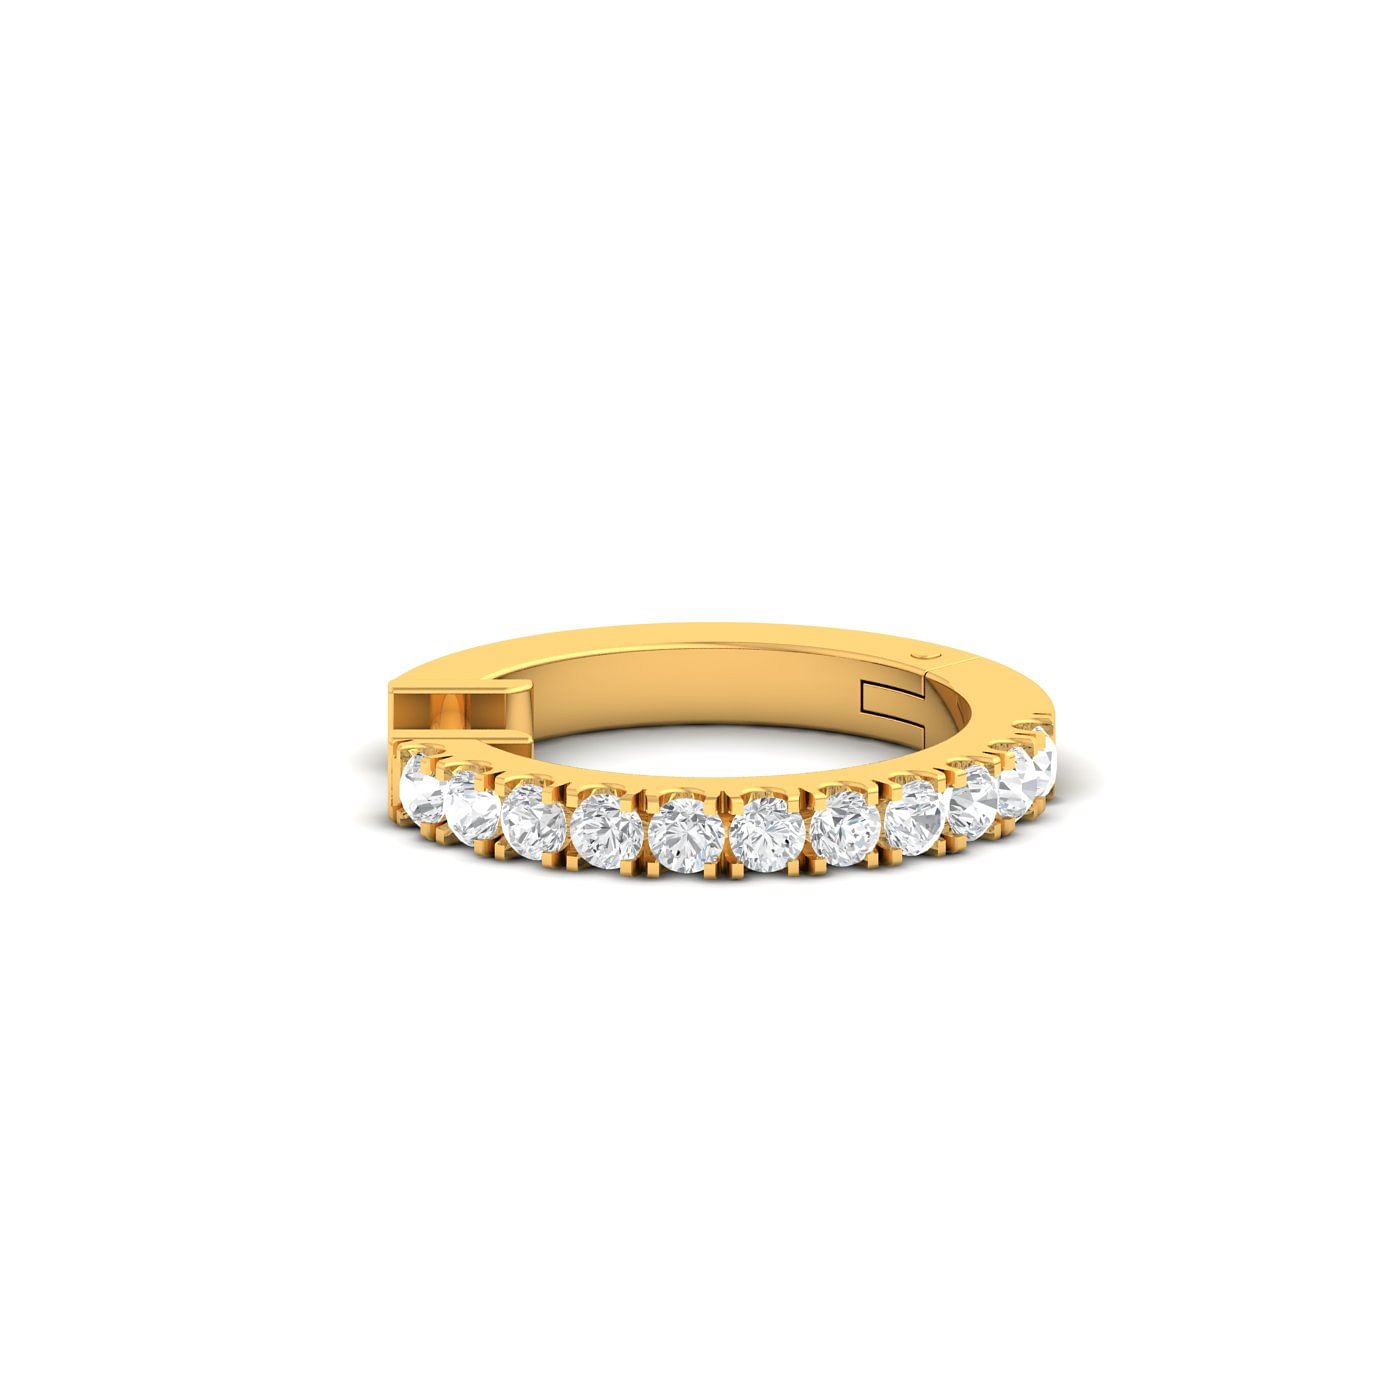 Sania Mirza's Round Diamond Ring